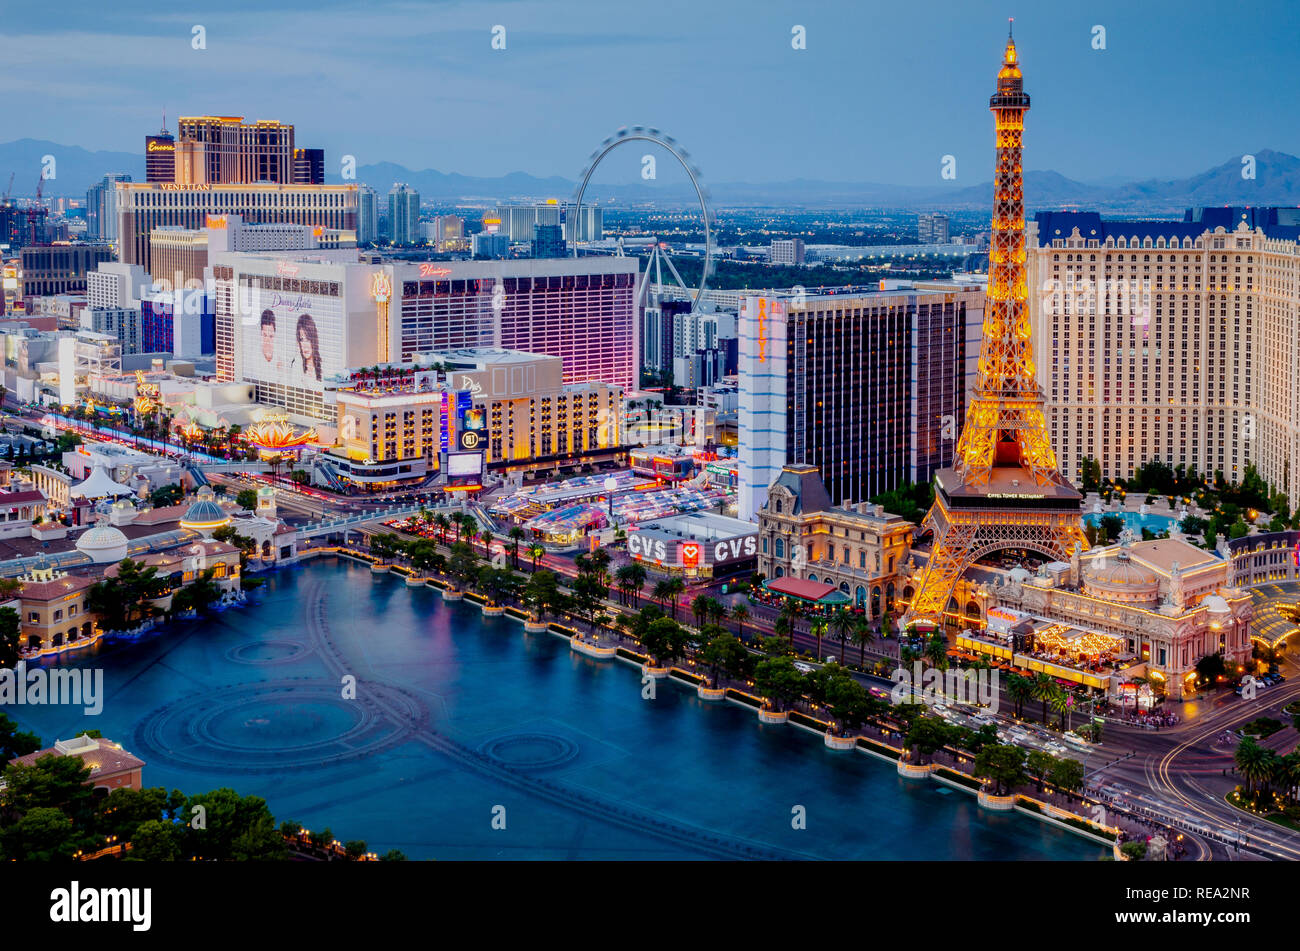 Las Vegas skyline featuring the Bellagio Fountains, Paris Las Vegas, Linq High Roller & Las Vegas Strip in Las Vegas, Nevada, USA Stock Photo